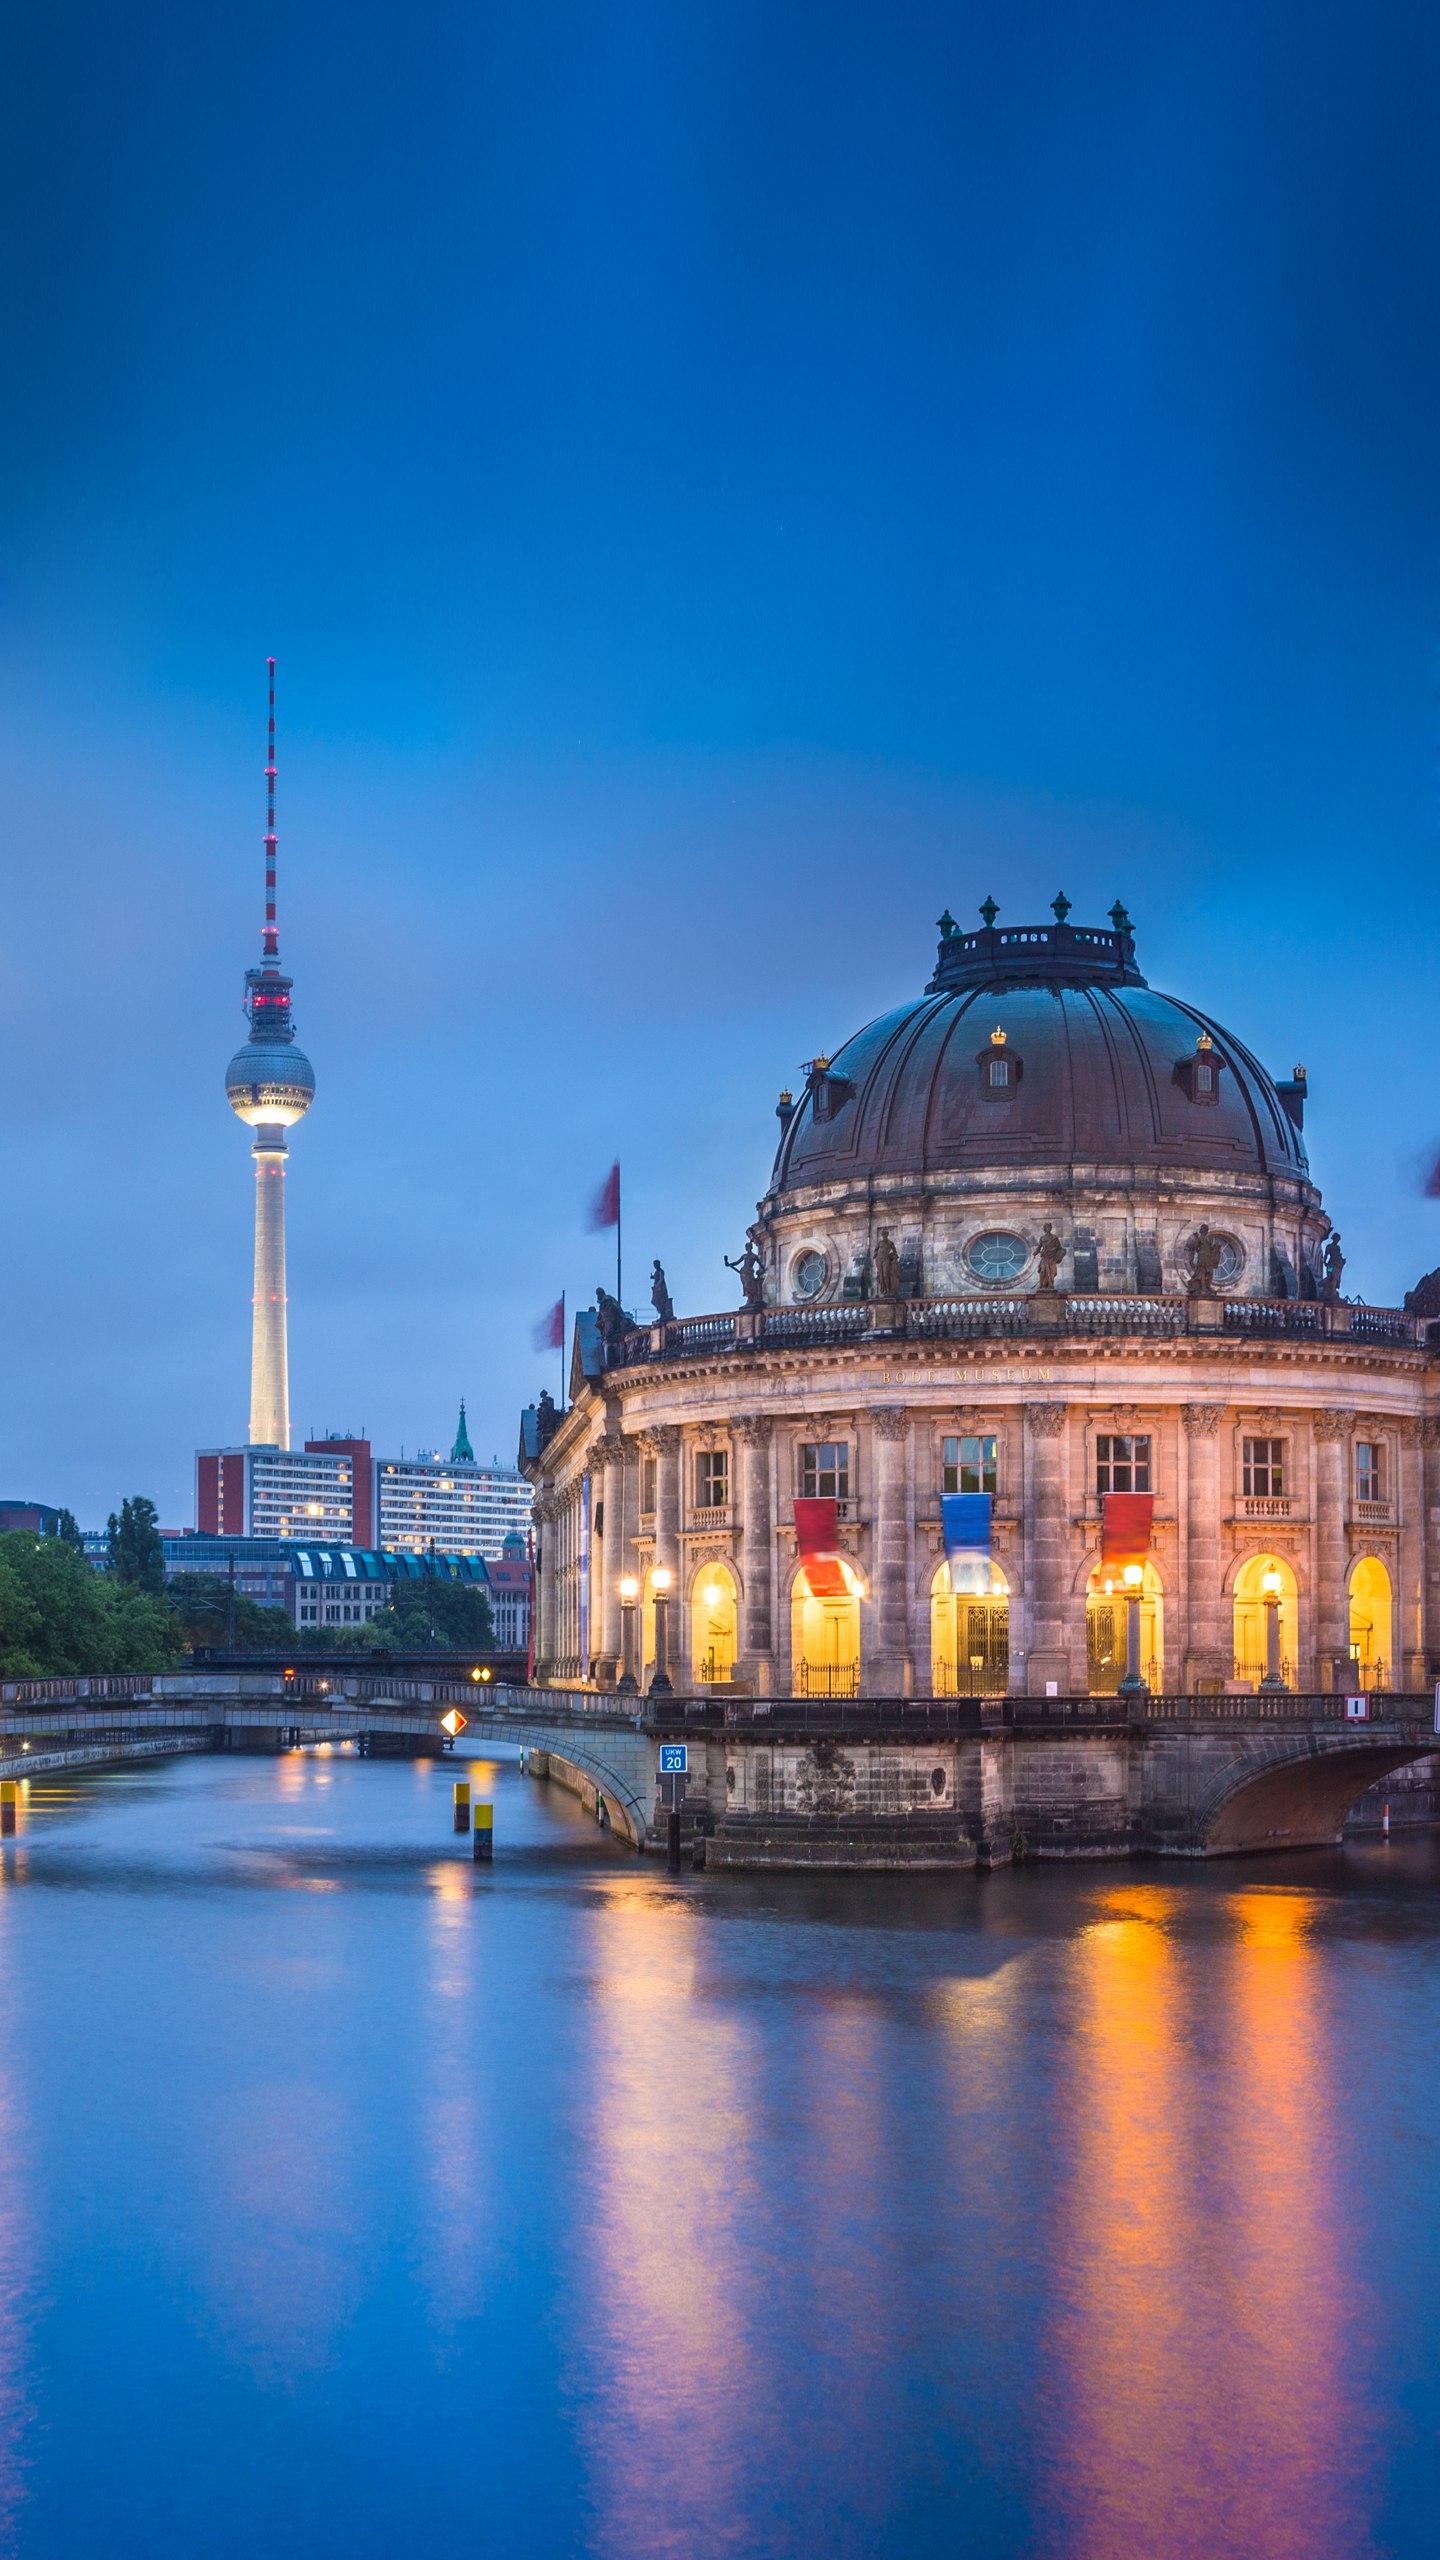 柏林,作为德国的首都,它以众多著名的建筑,厚重的历史与艺术氛围,吸引